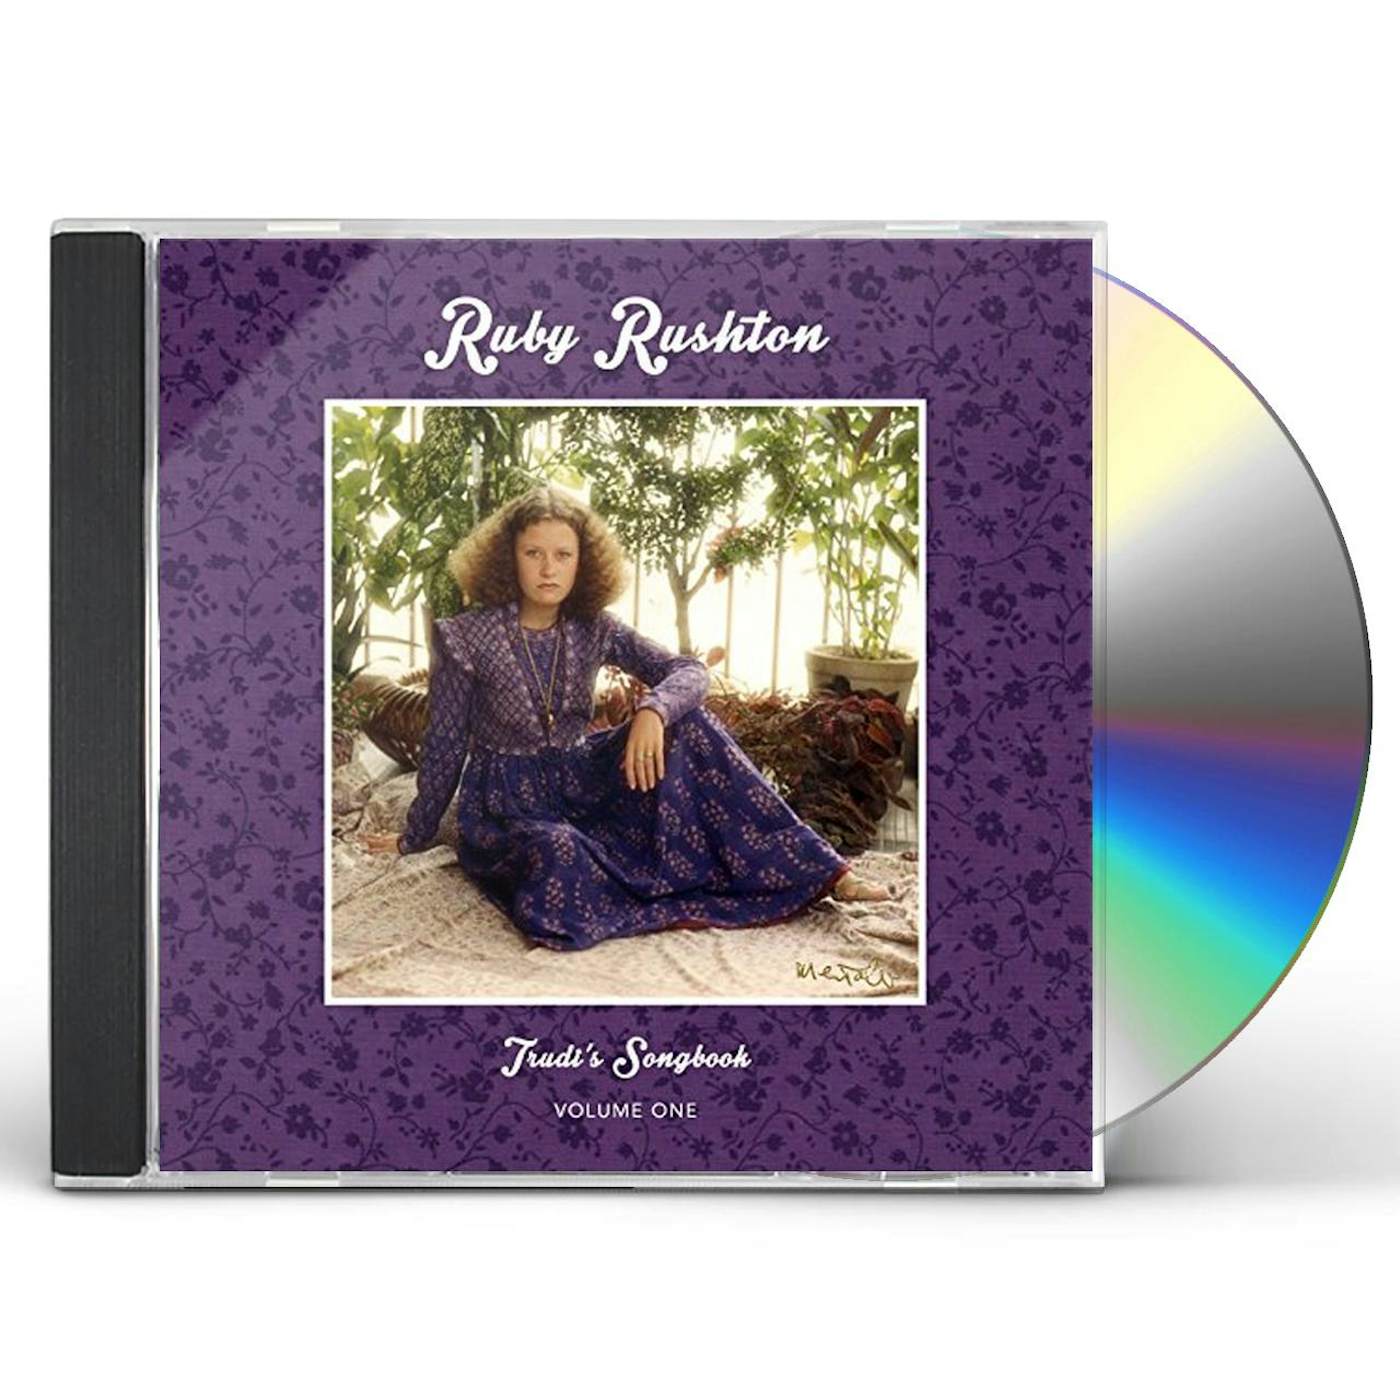 Ruby Rushton TRUDI'S SONGBOOK: VOLUME 1 CD